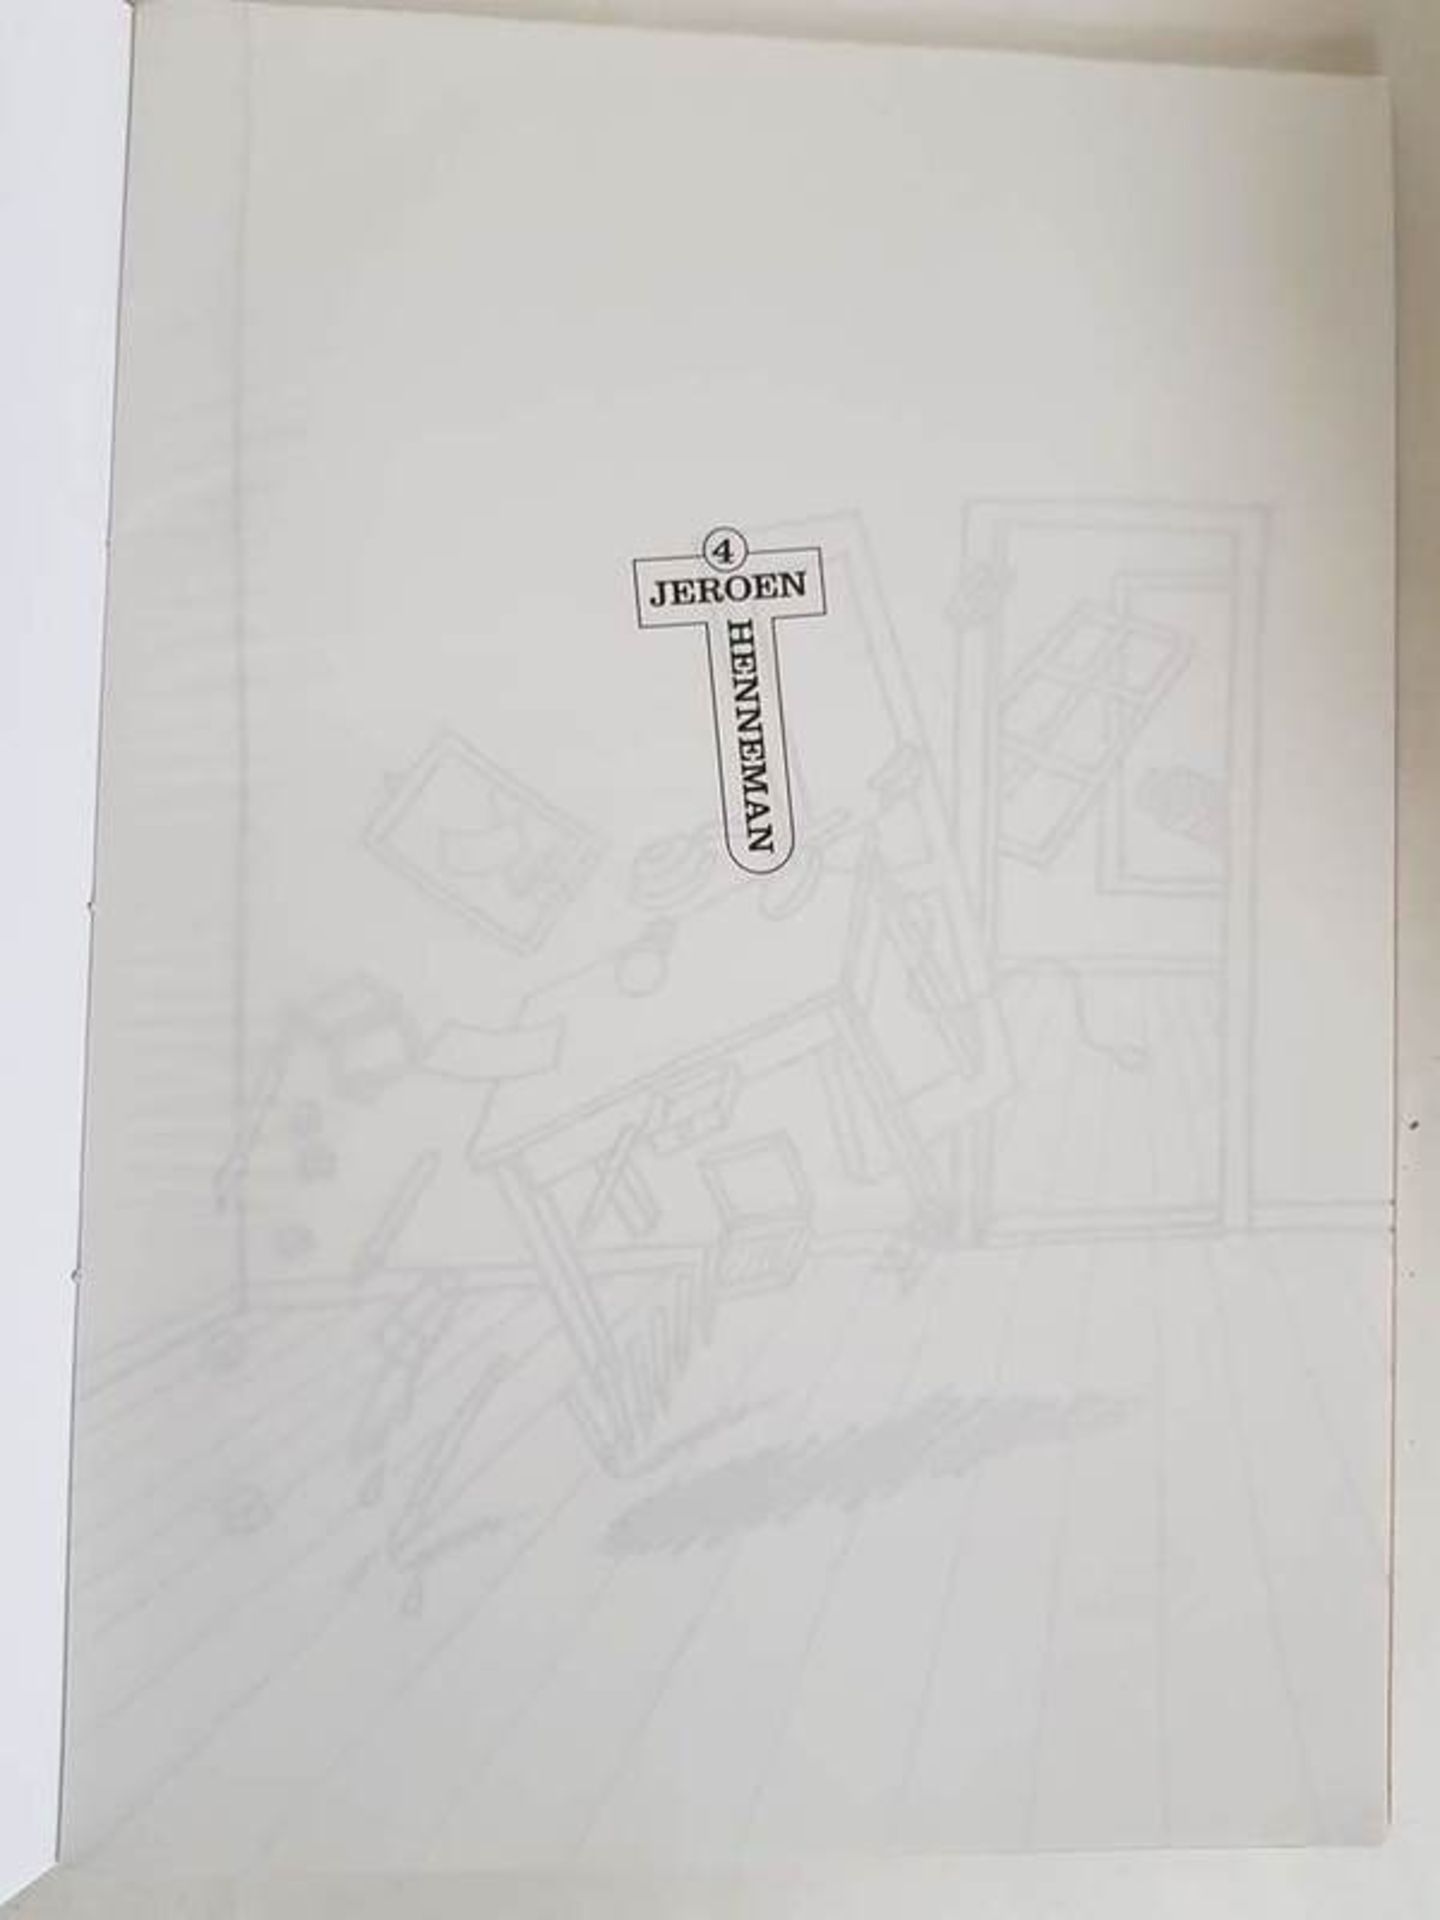 (Boeken) (Kunst/boeken) Kunst en kleurboek - 1997Met werk van o.a. Marlene Dumas, Klaas Gubbels en - Image 7 of 7